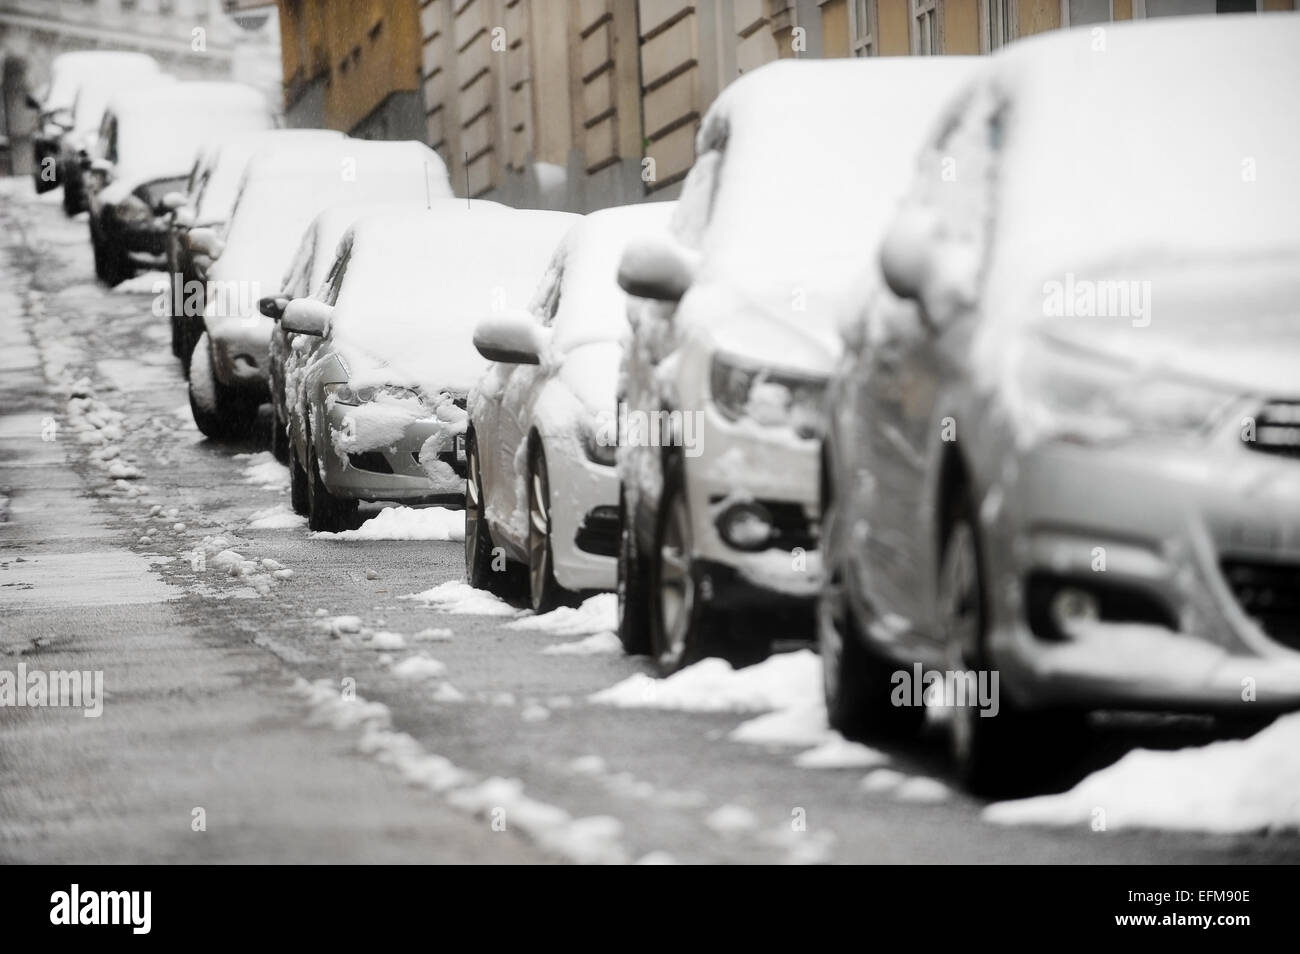 Städtisches Motiv mit parkenden Autos in einer Reihe mit Schnee bedeckt, während eines Schneefalls Stockfoto